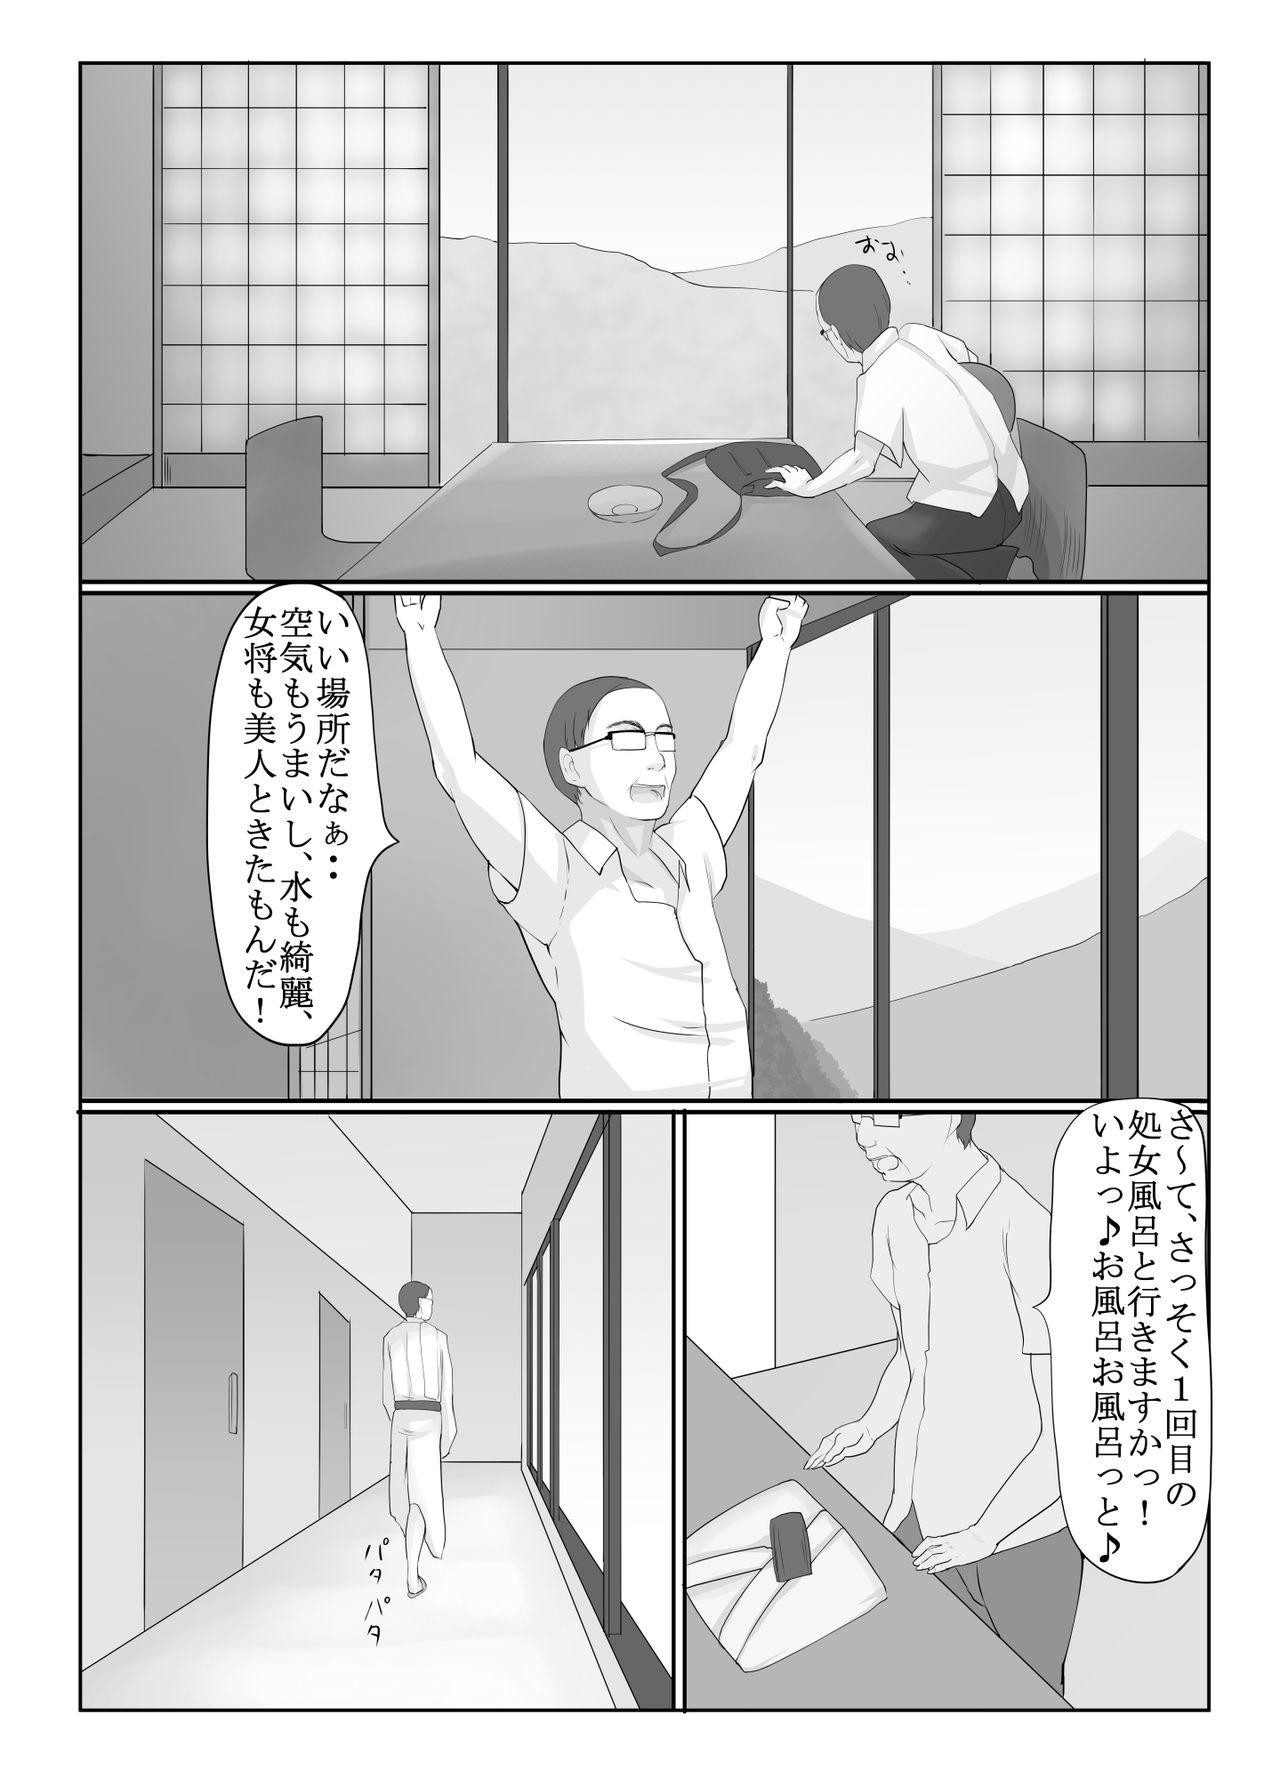 Spreading Shōjo izumi - Original Sixtynine - Page 4